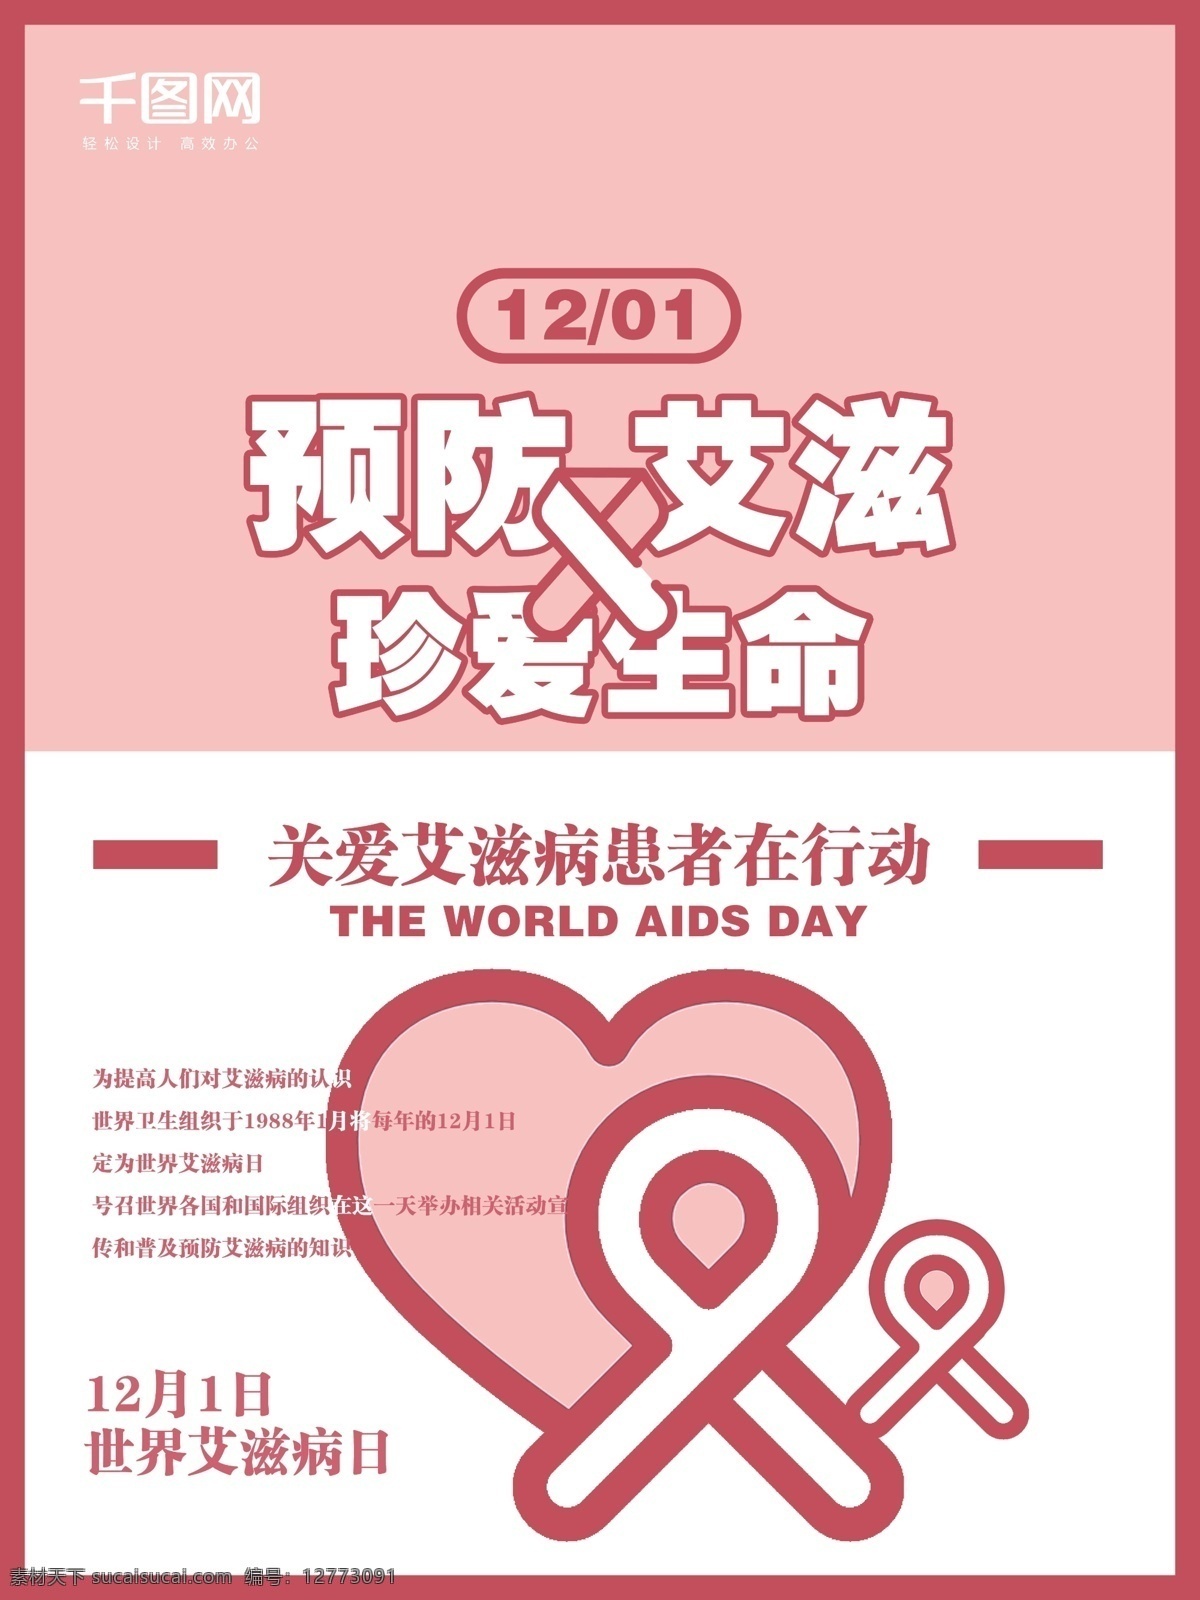 红色 丝带 世界 艾滋病 日 公益 公益海报 艾滋病日 海报 粉色 红色丝带